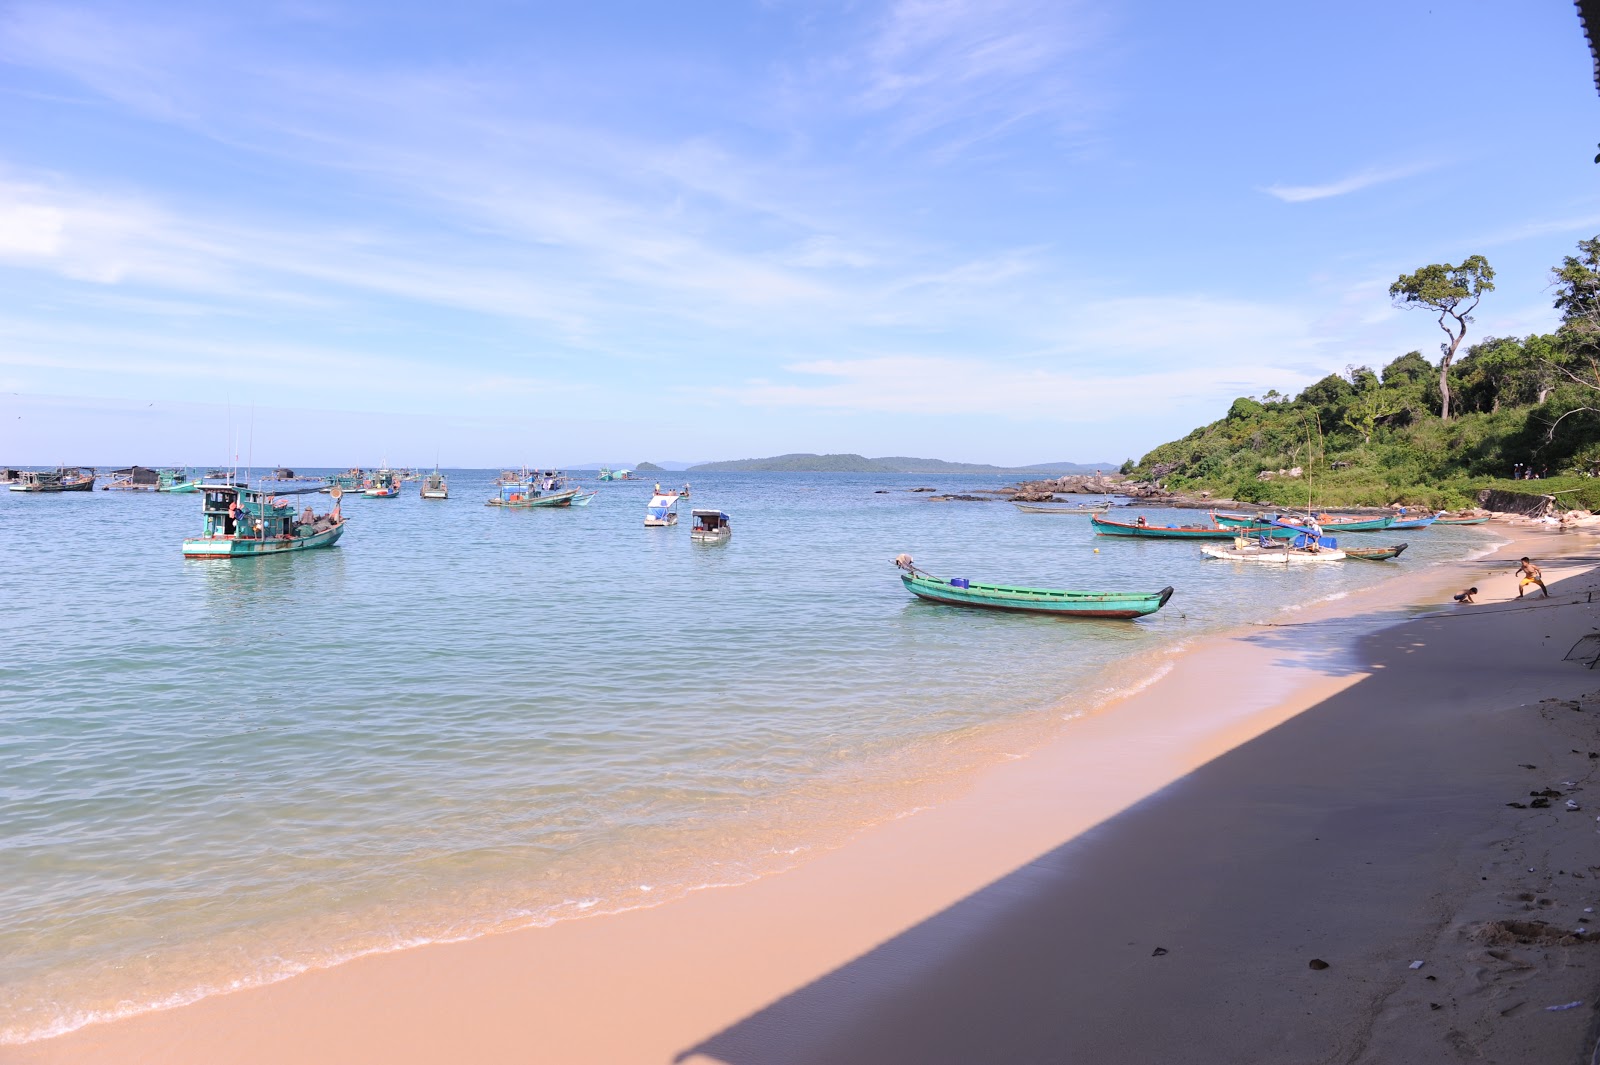 Foto af Ganh Dau Beach - populært sted blandt afslapningskendere